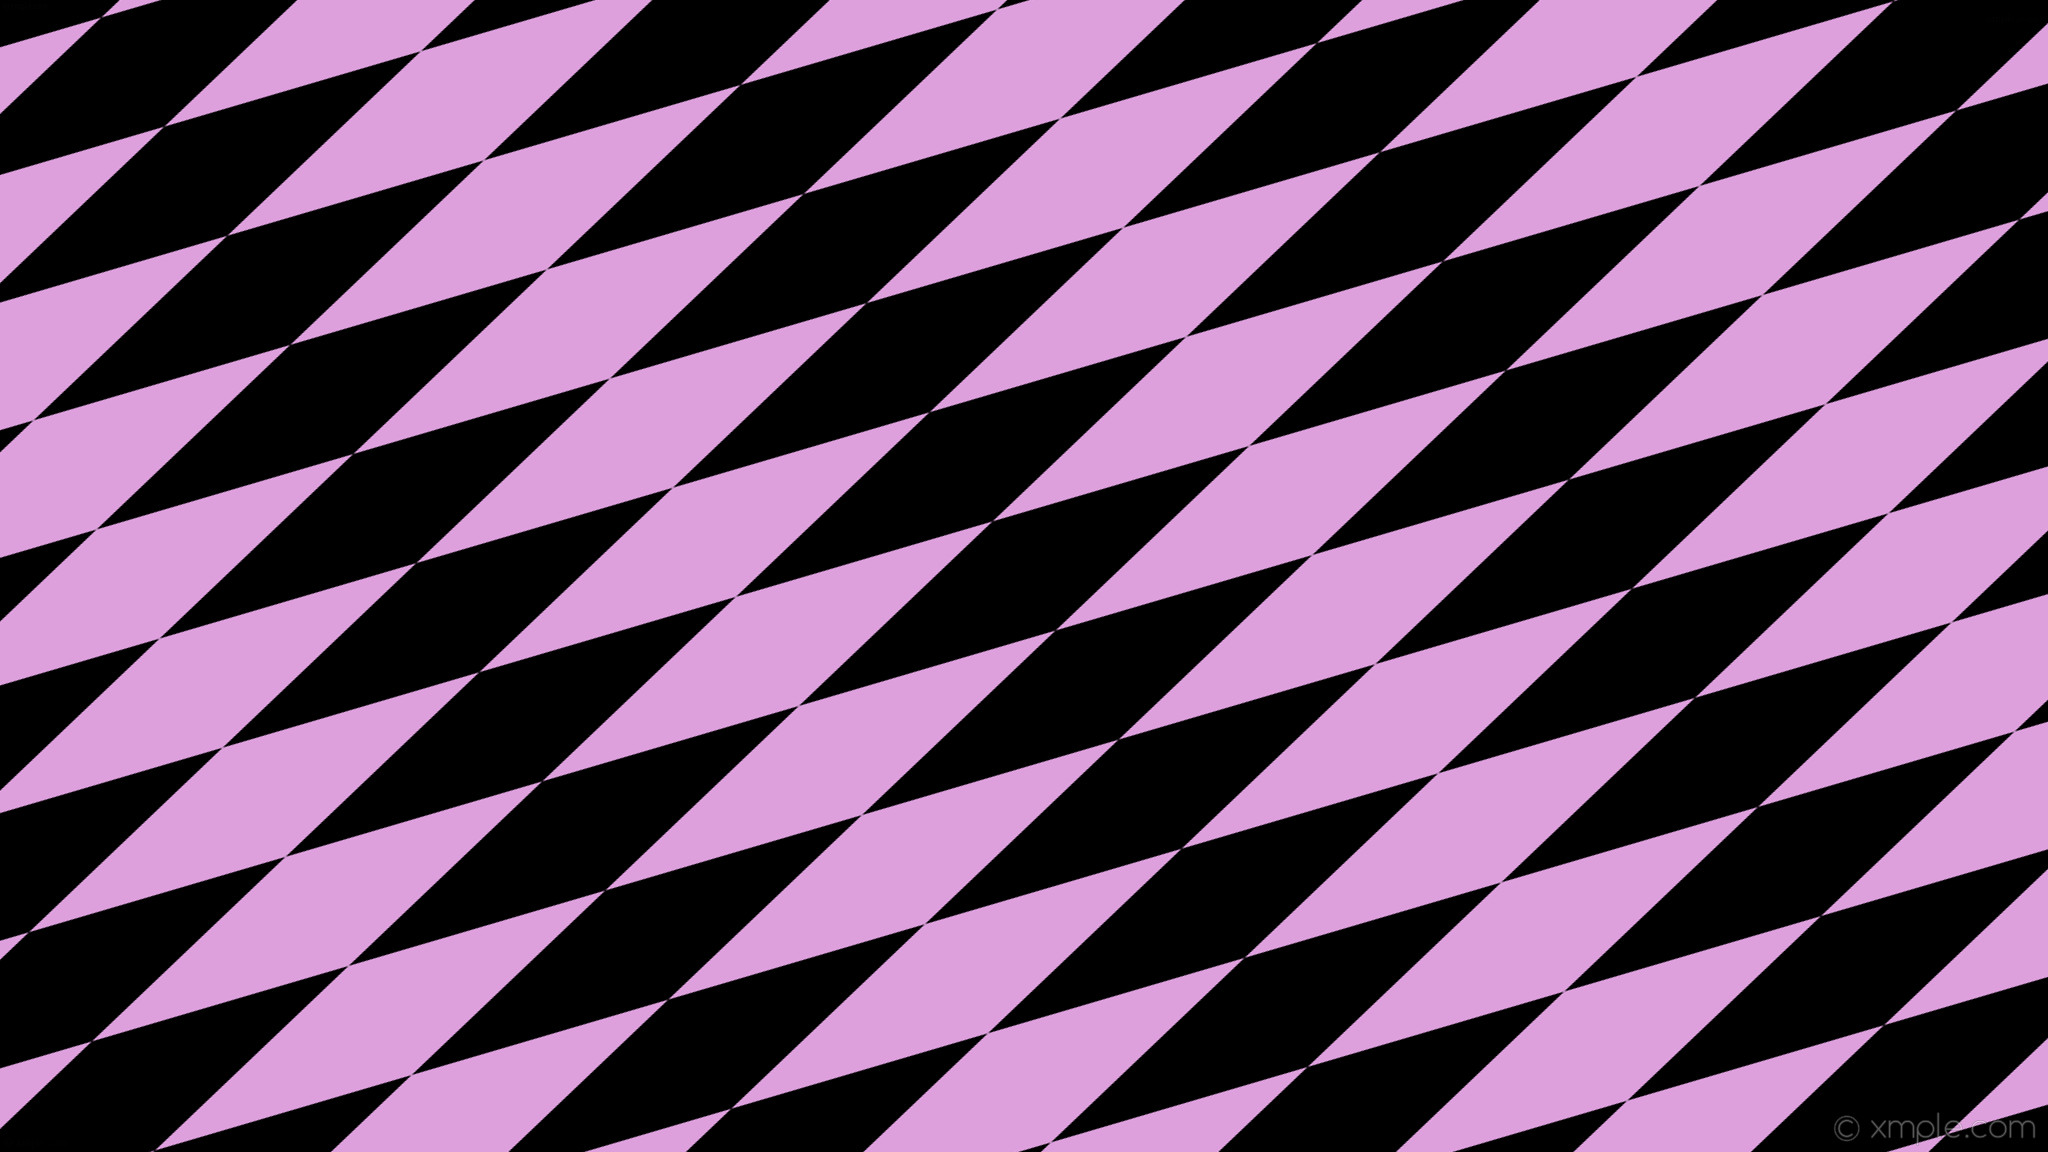 2048x1152 wallpaper rhombus lozenge black purple diamond plum #000000 #dda0dd 30Â°  520px 126px